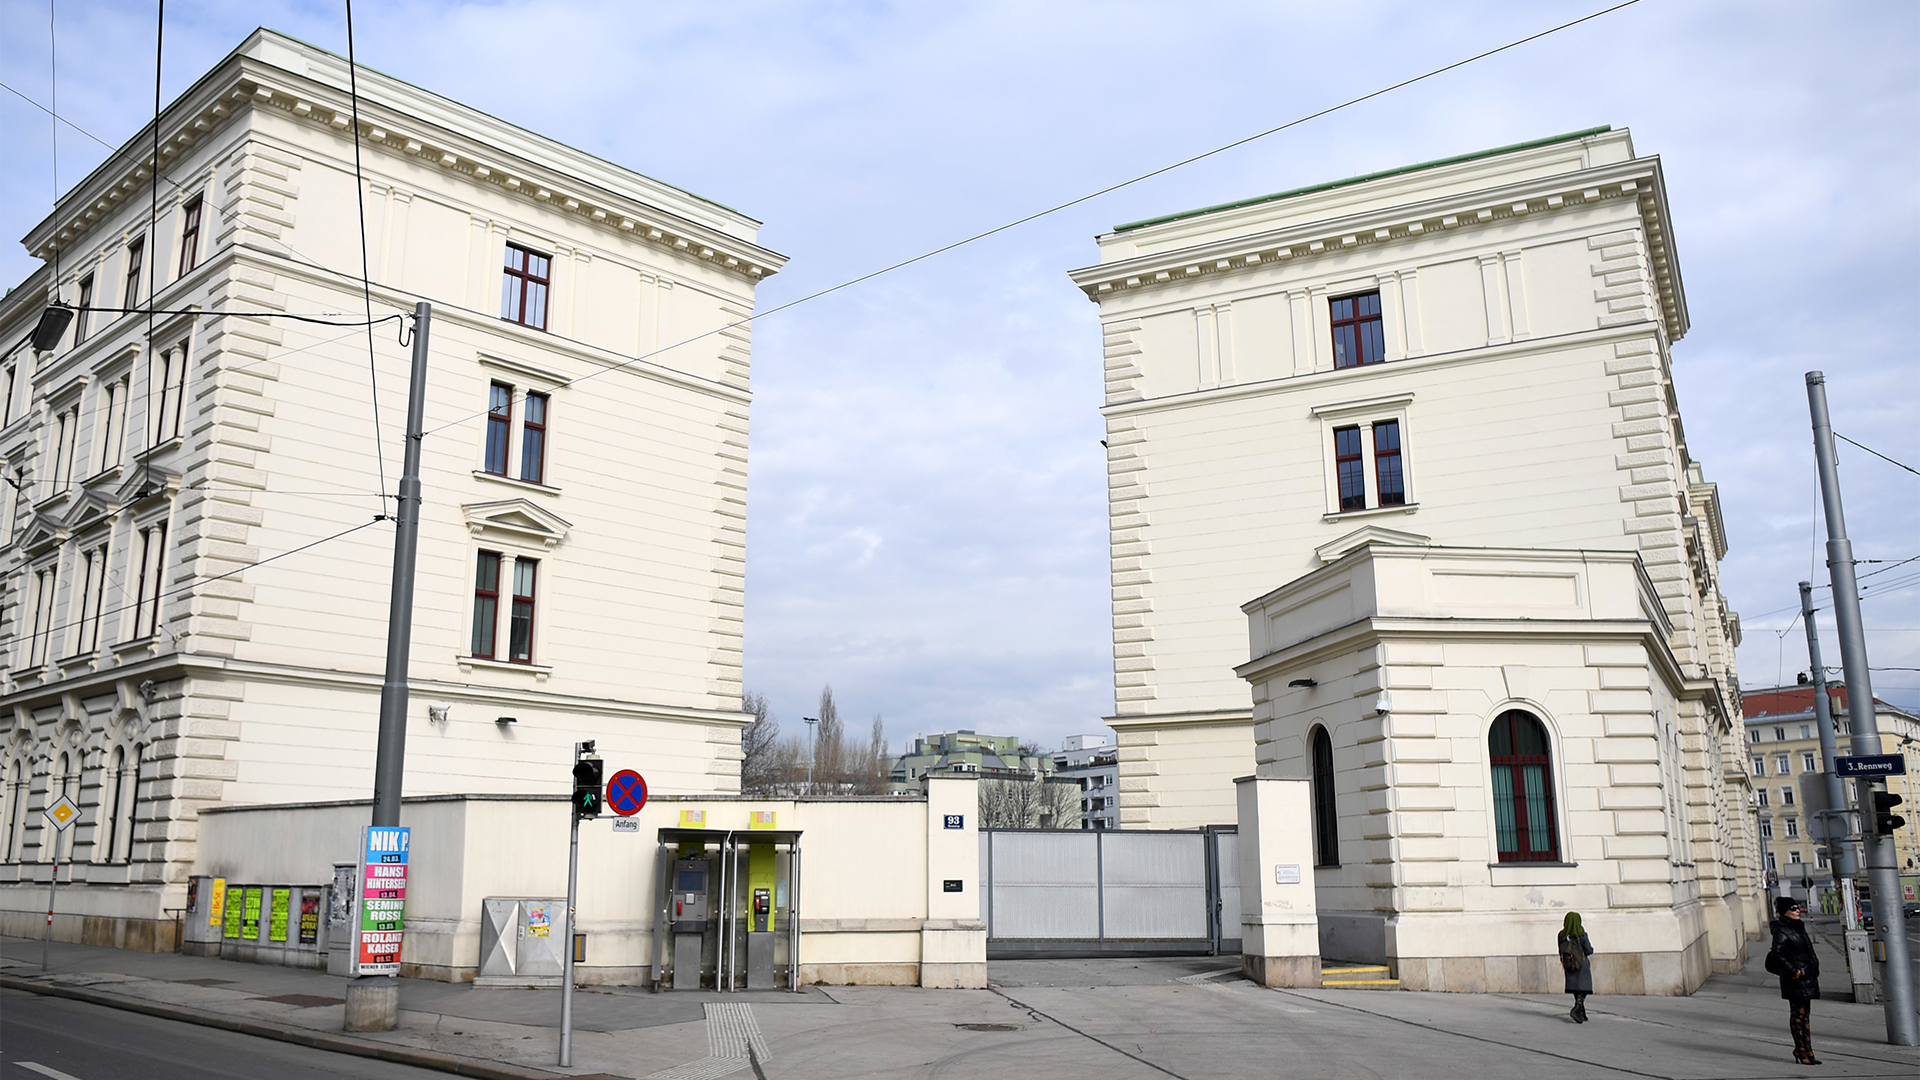 Das Bundesamt für Verfassungsschutz und Terrorismusbekämpfung (BVT) in Wien. | picture alliance / HELMUT FOHRIN